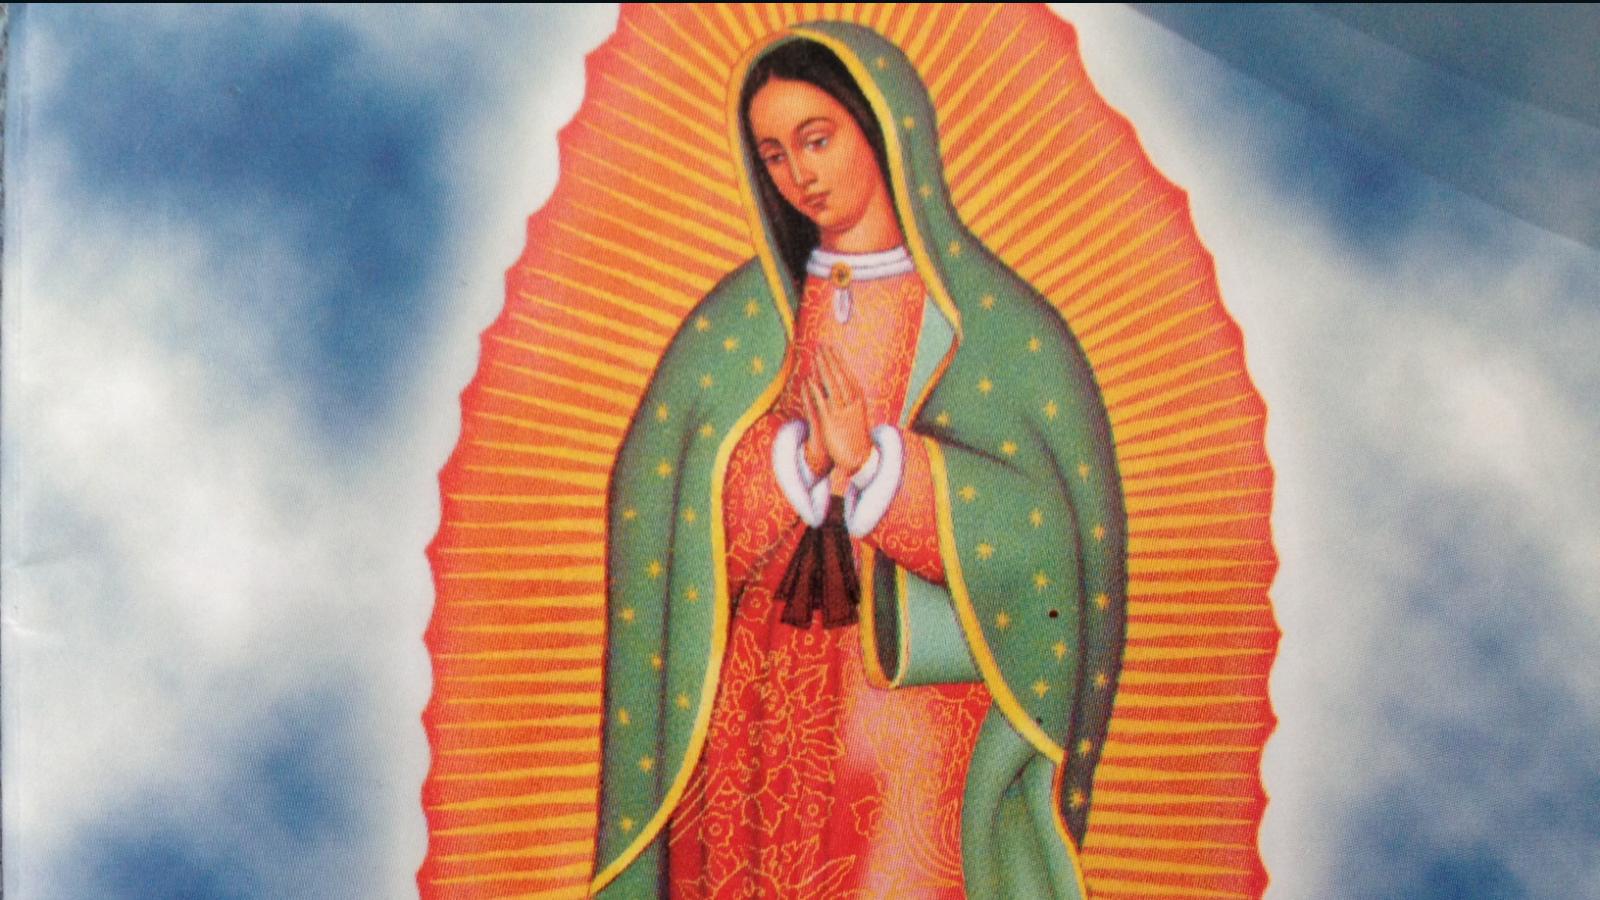 Guadalupe Carral y su devoción por la virgen de Guadalupe | Video | CNN